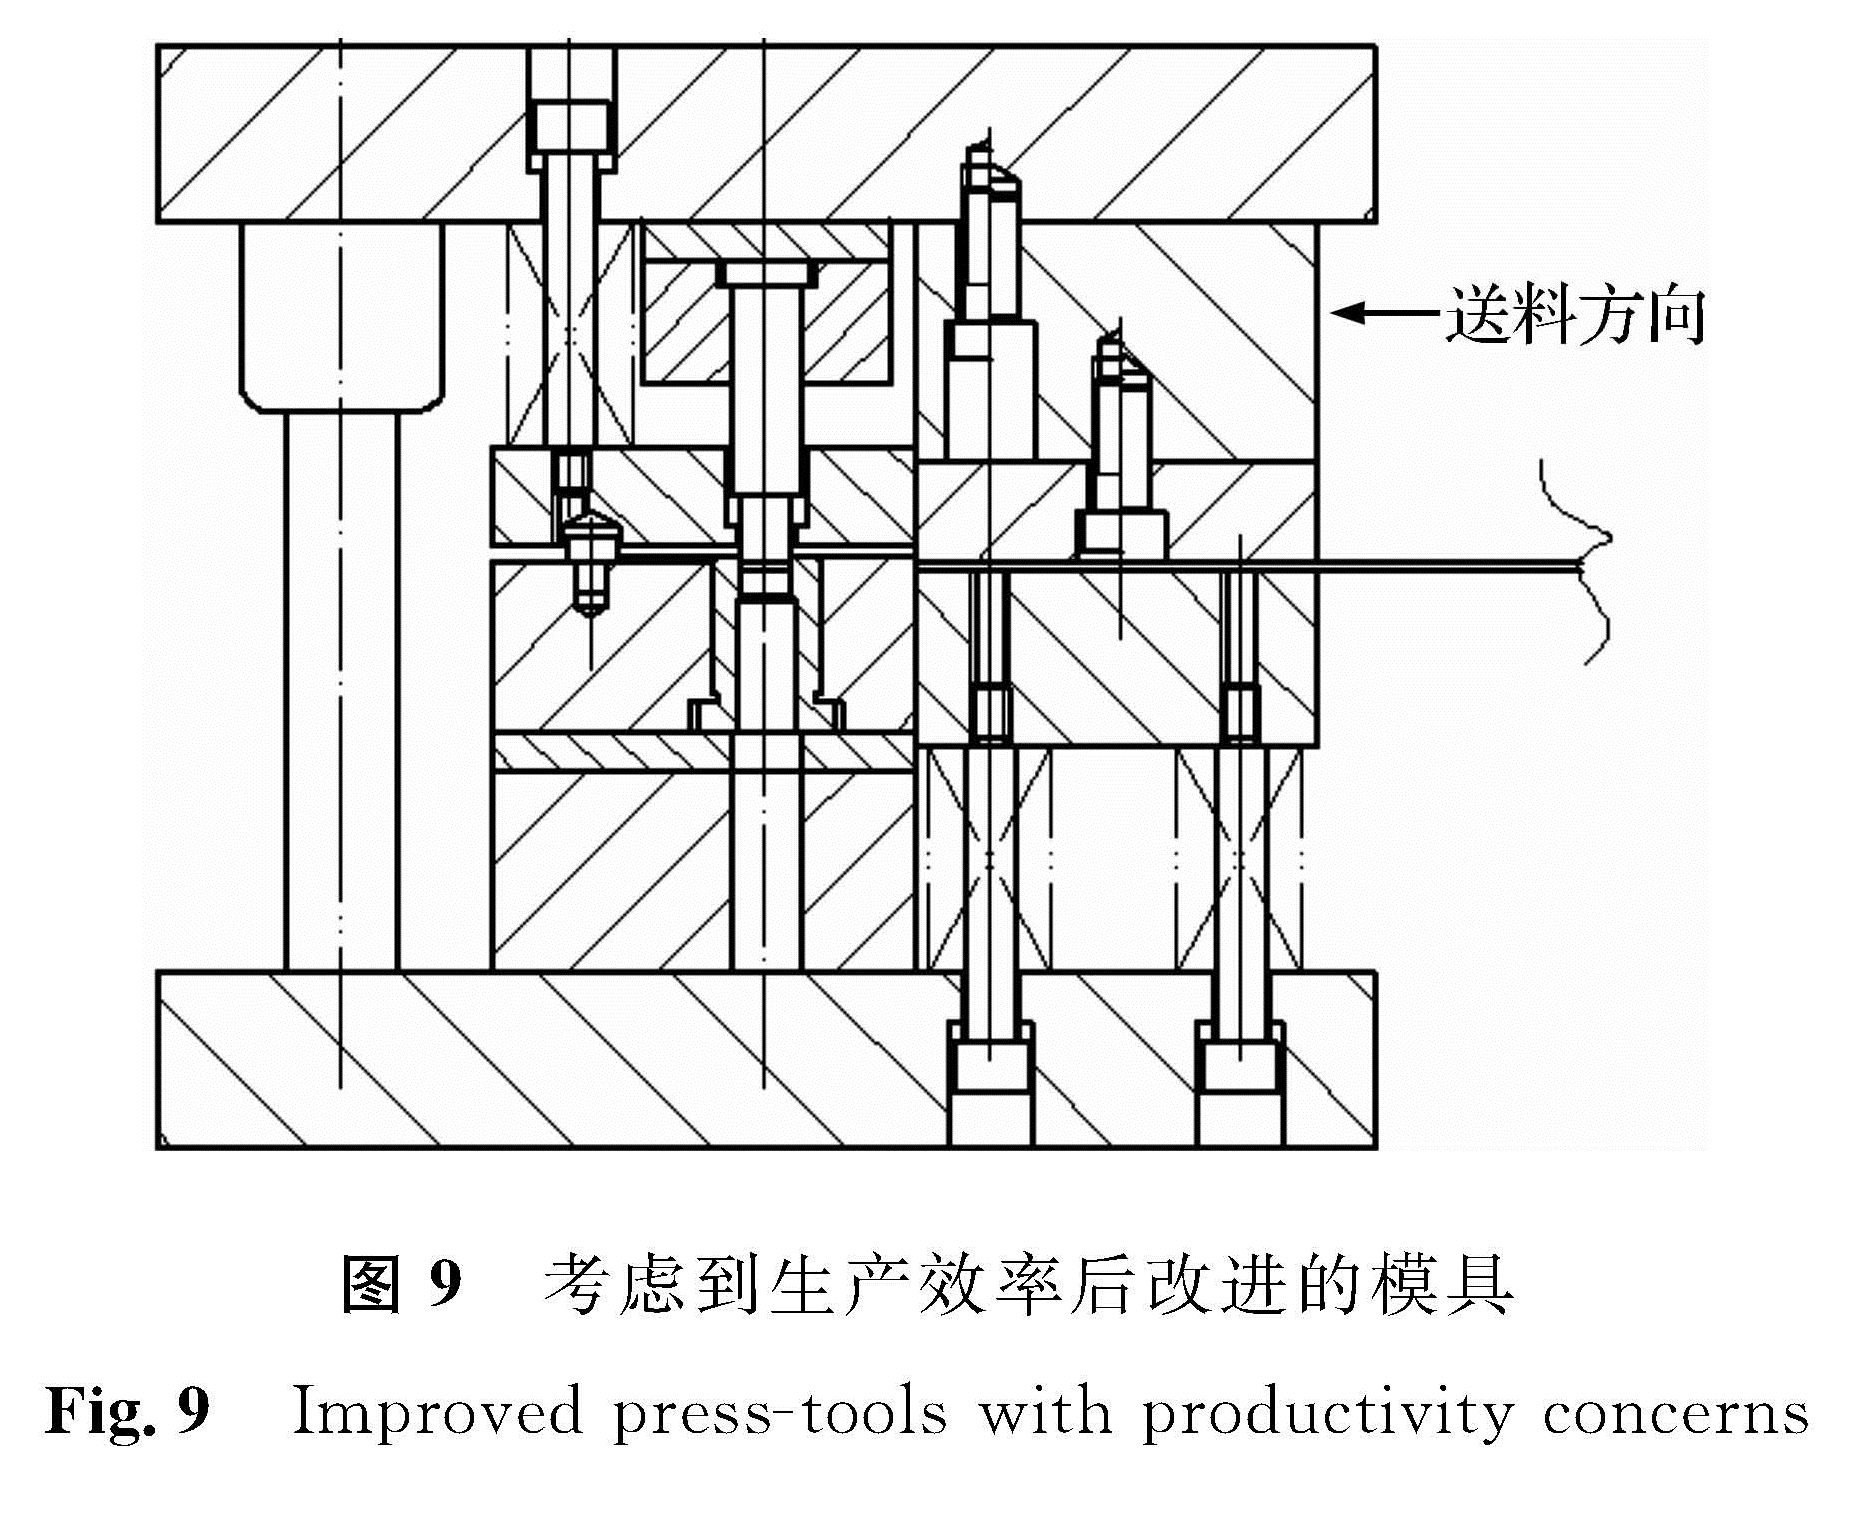 图9 考虑到生产效率后改进的模具<br/>Fig.9 Improved press-tools with productivity concerns